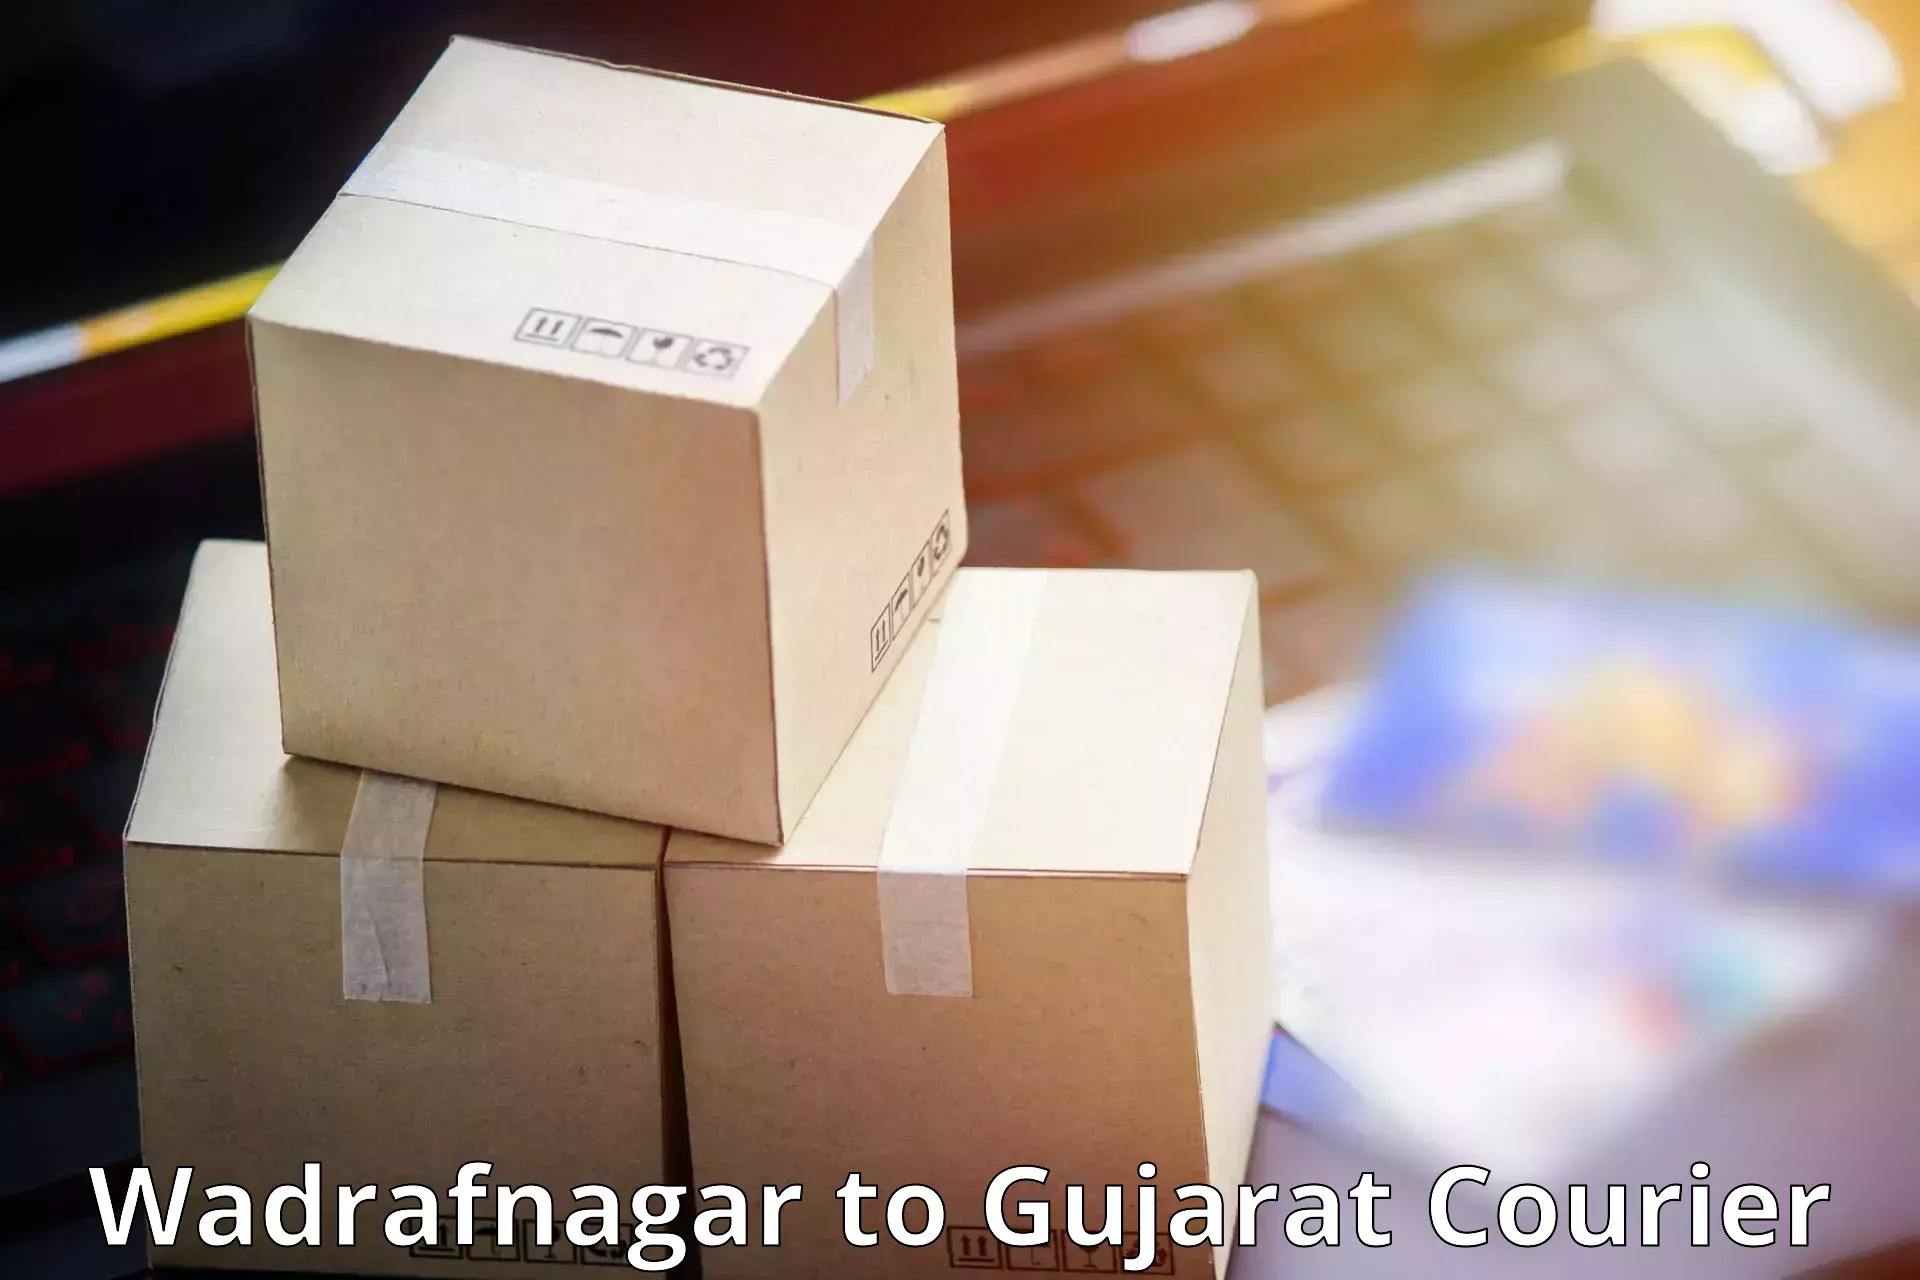 Rural area delivery in Wadrafnagar to Gujarat